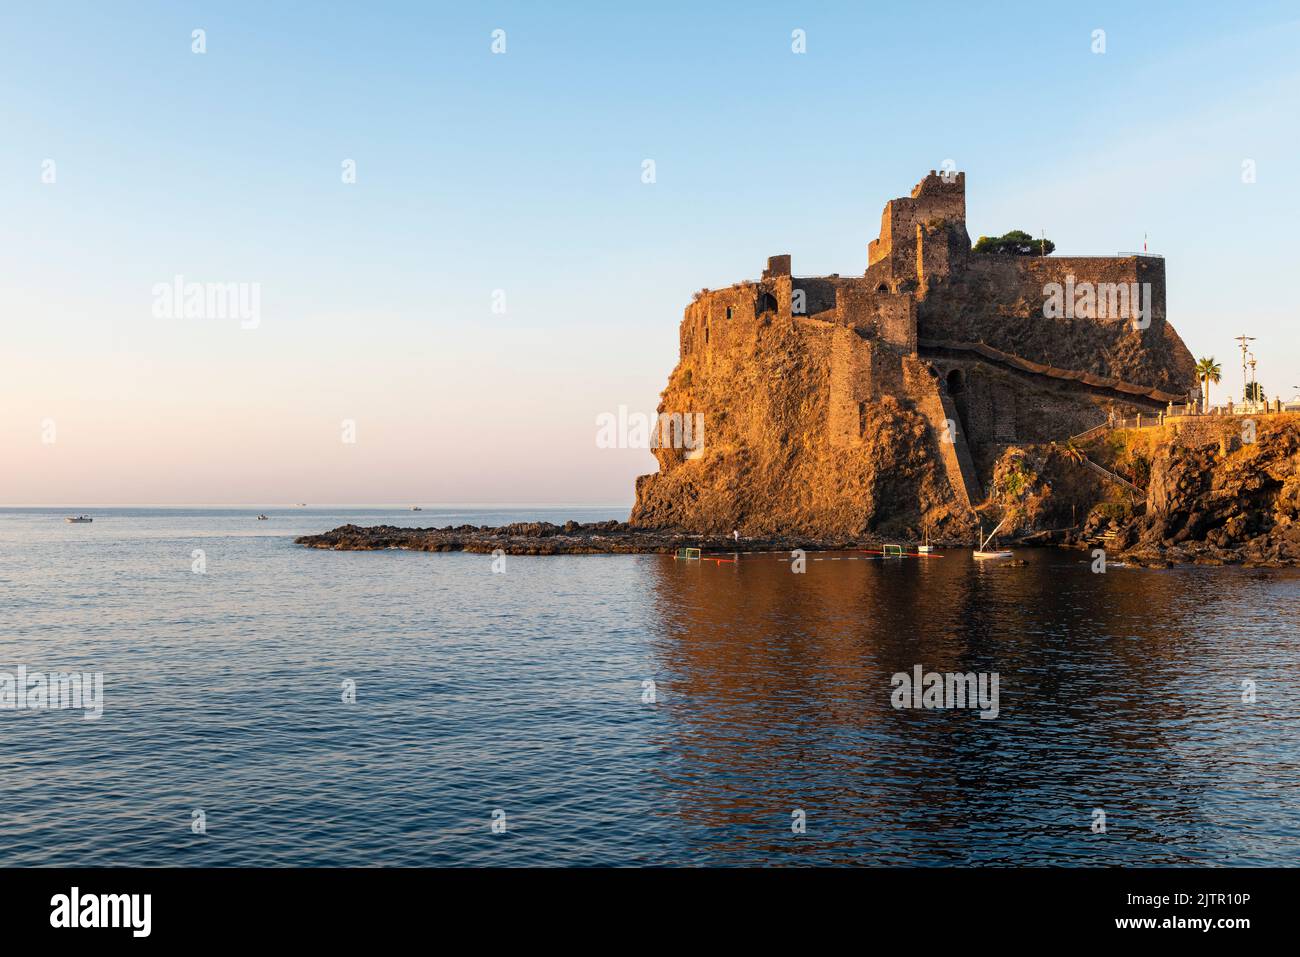 Il castello normanno (1076) ad Aci Castello, Sicilia, visto all'alba. Sorge su un alto affioramento di basalto (lava) e si basa su una fortezza bizantina del 7c Foto Stock